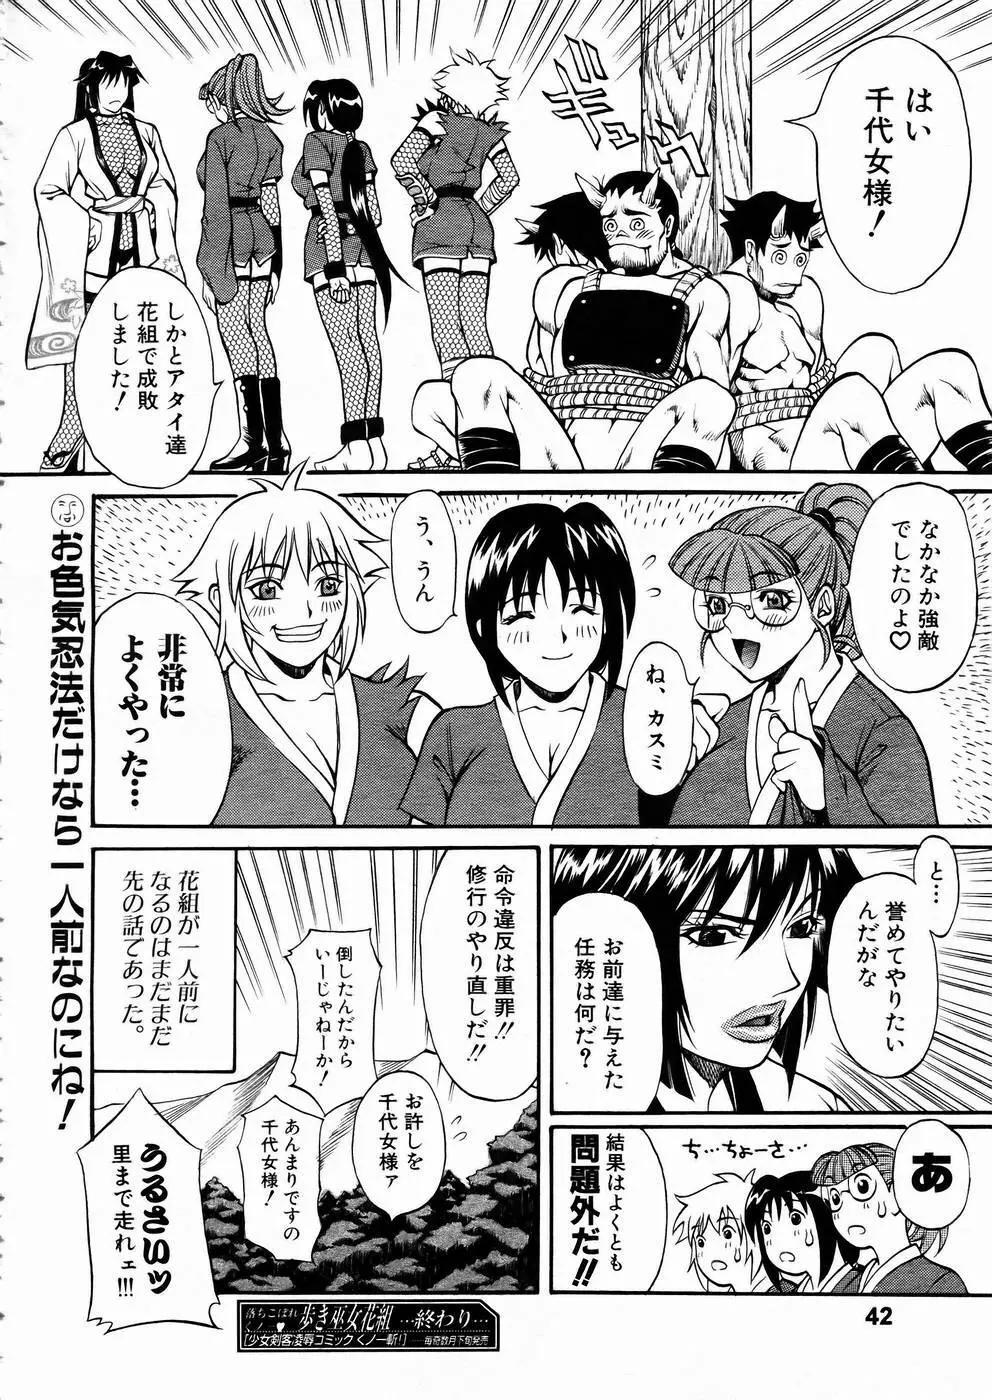 少女剣客凌辱コミック Vol.01 くノ一斬! 41ページ